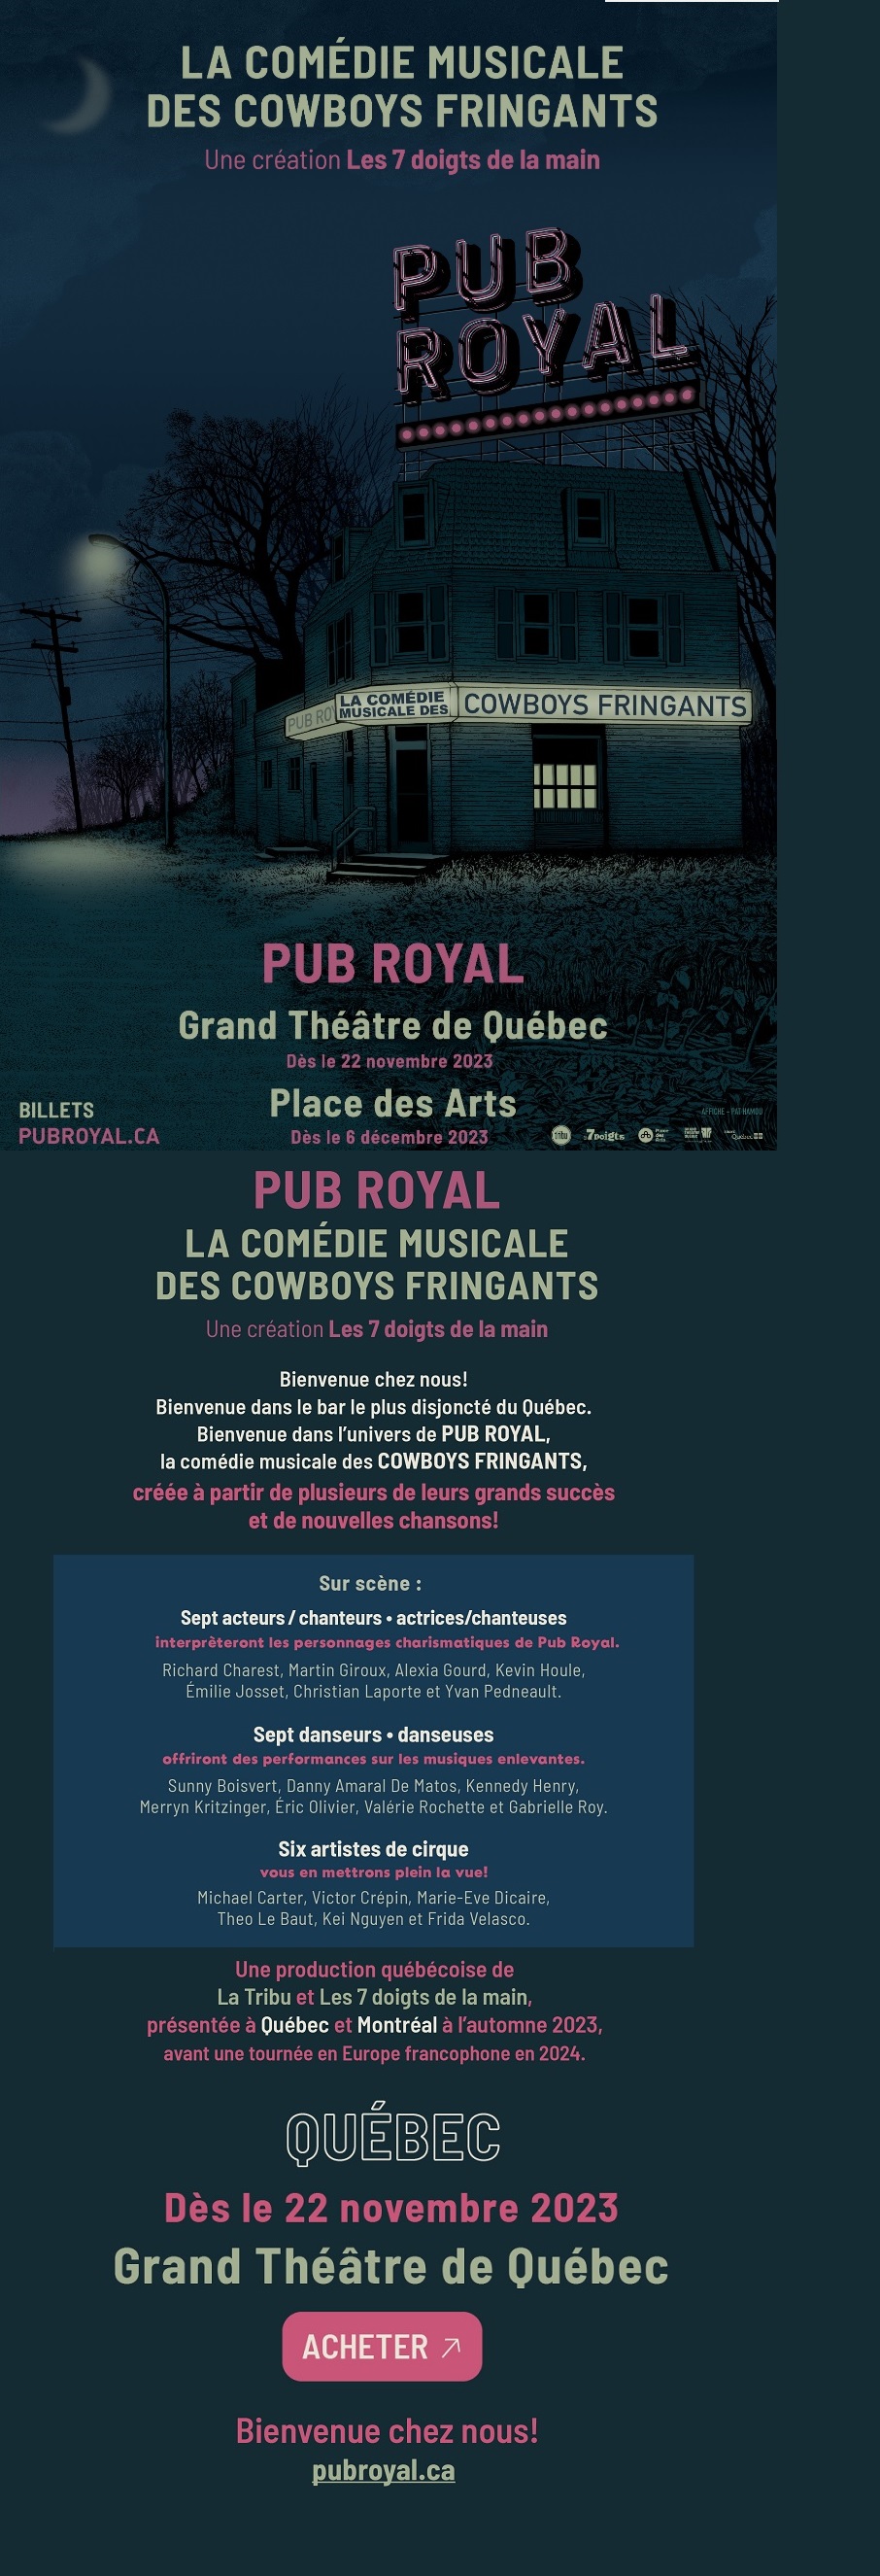 PUB ROYAL - La comédie musicale des COWBOYS FRINGANTS